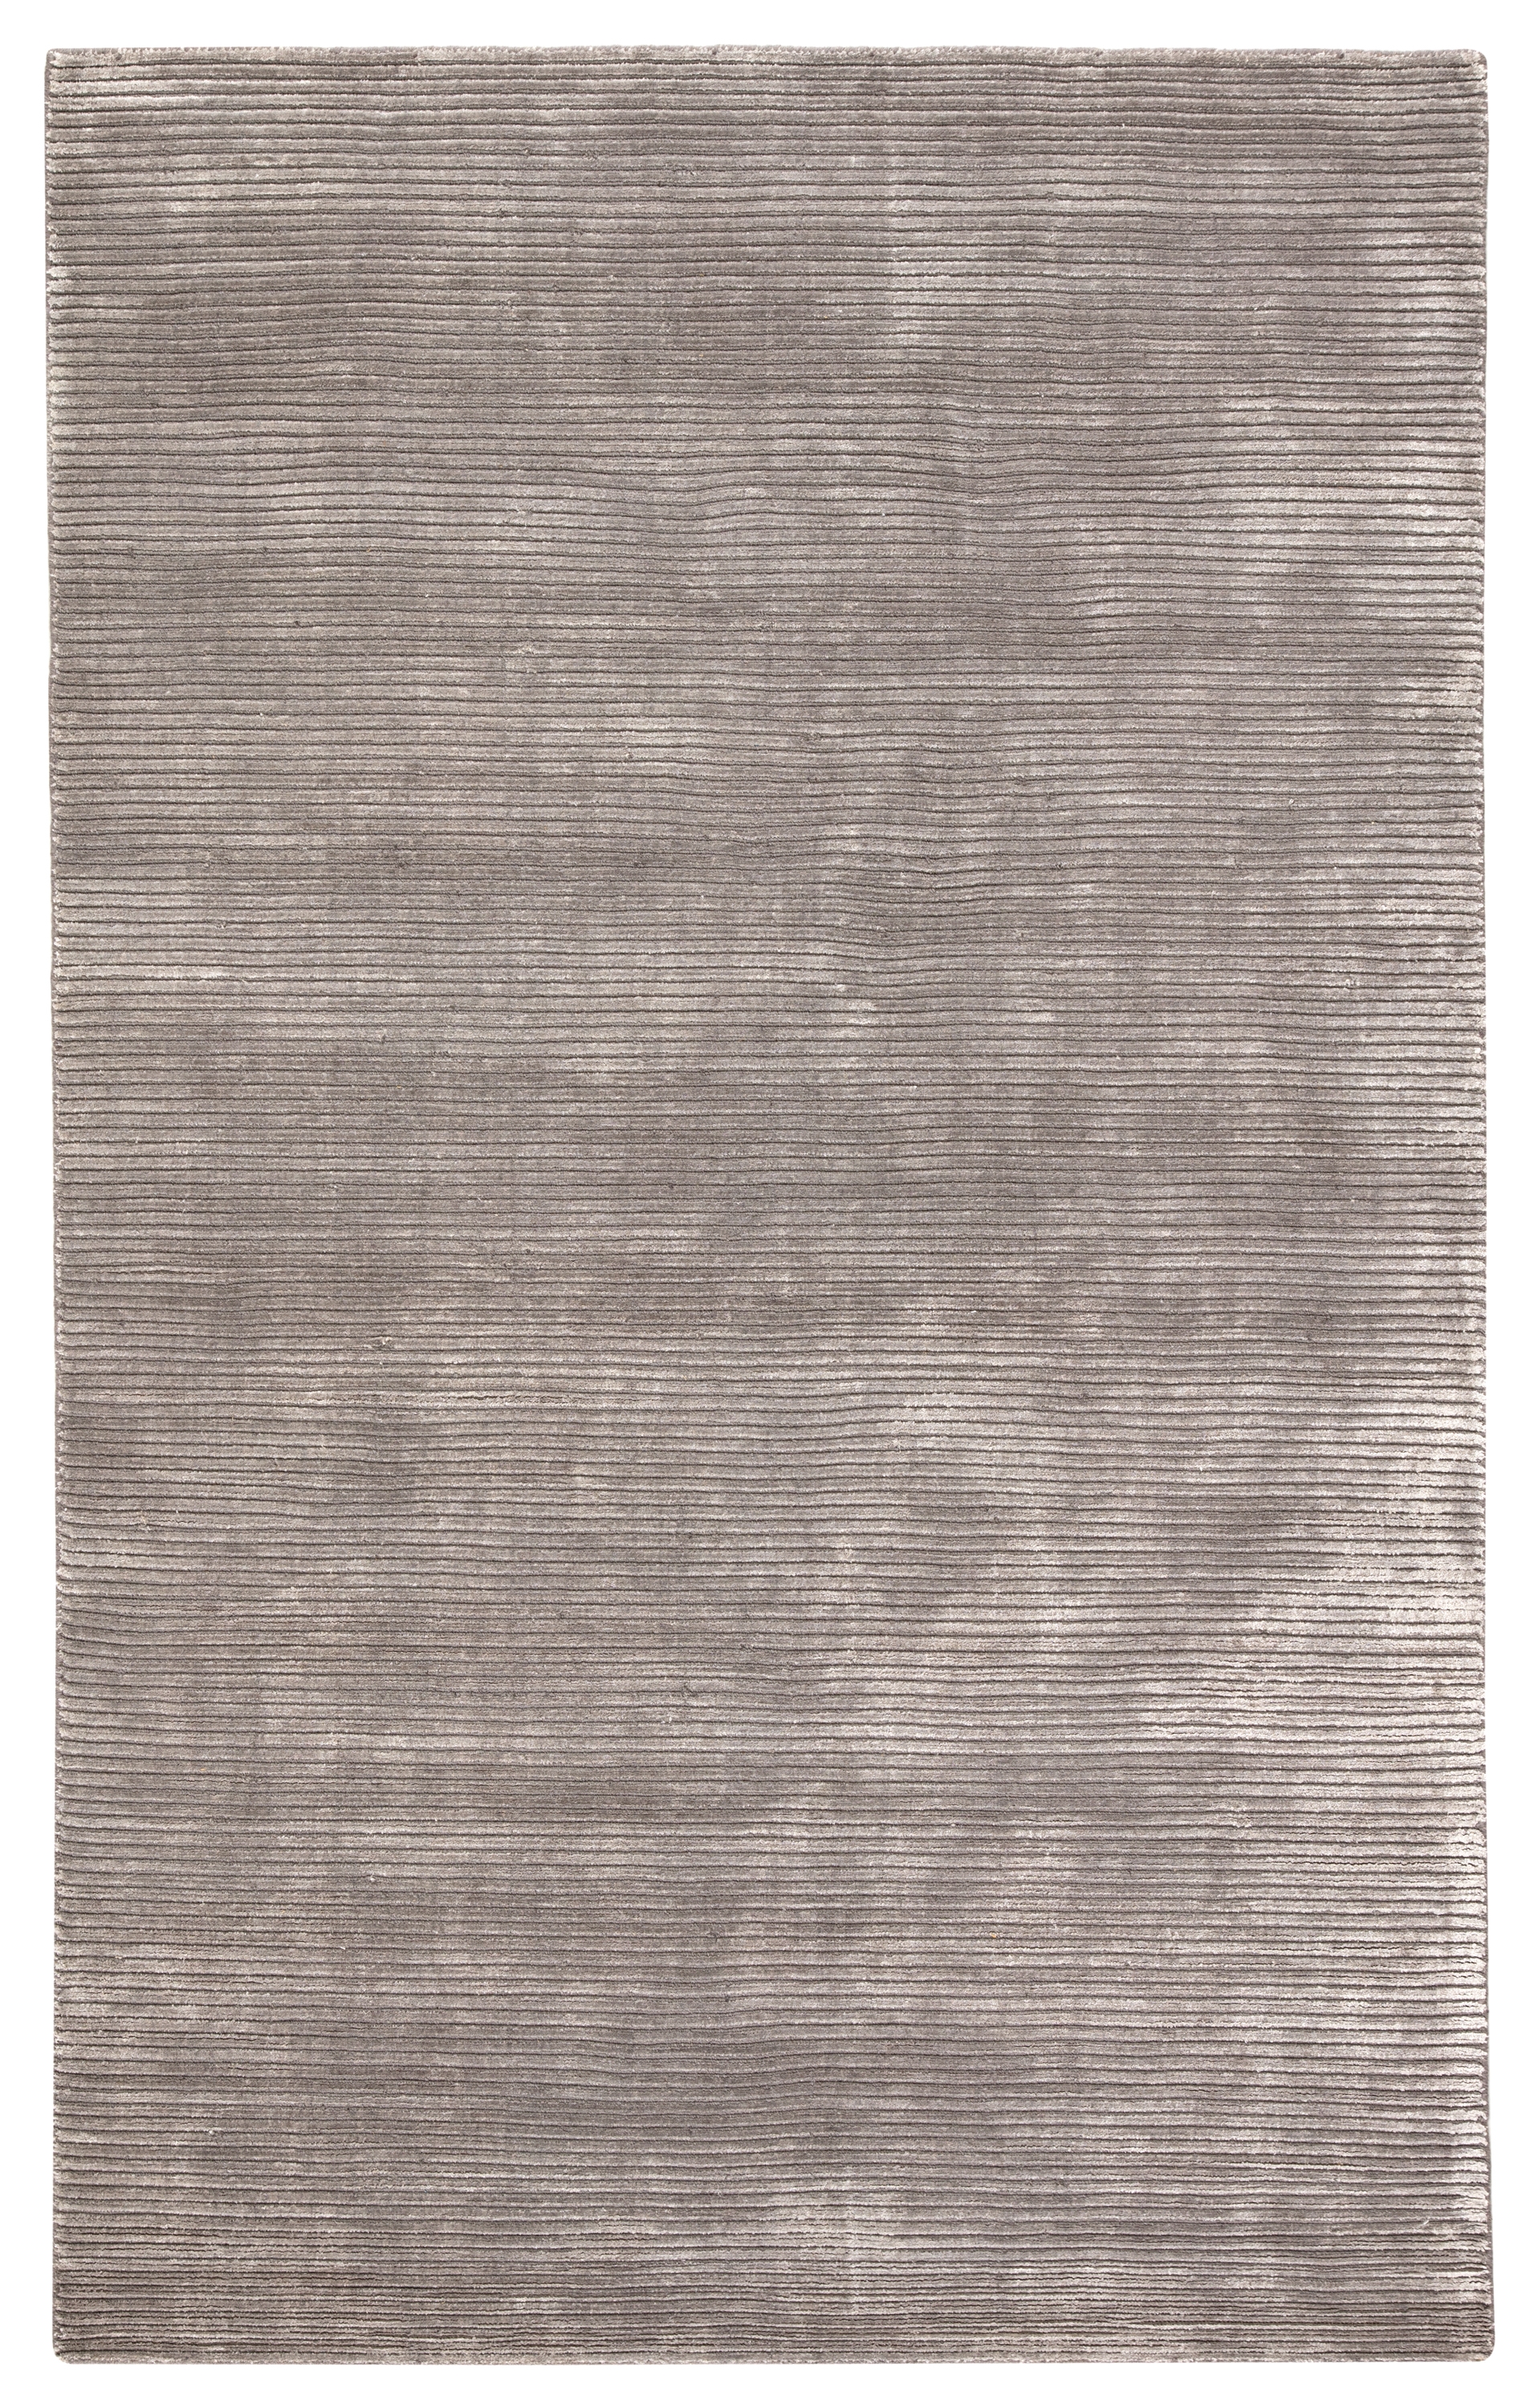 Basis Handmade Solid Gray/ Silver Area Rug (10' X 14') - Image 0